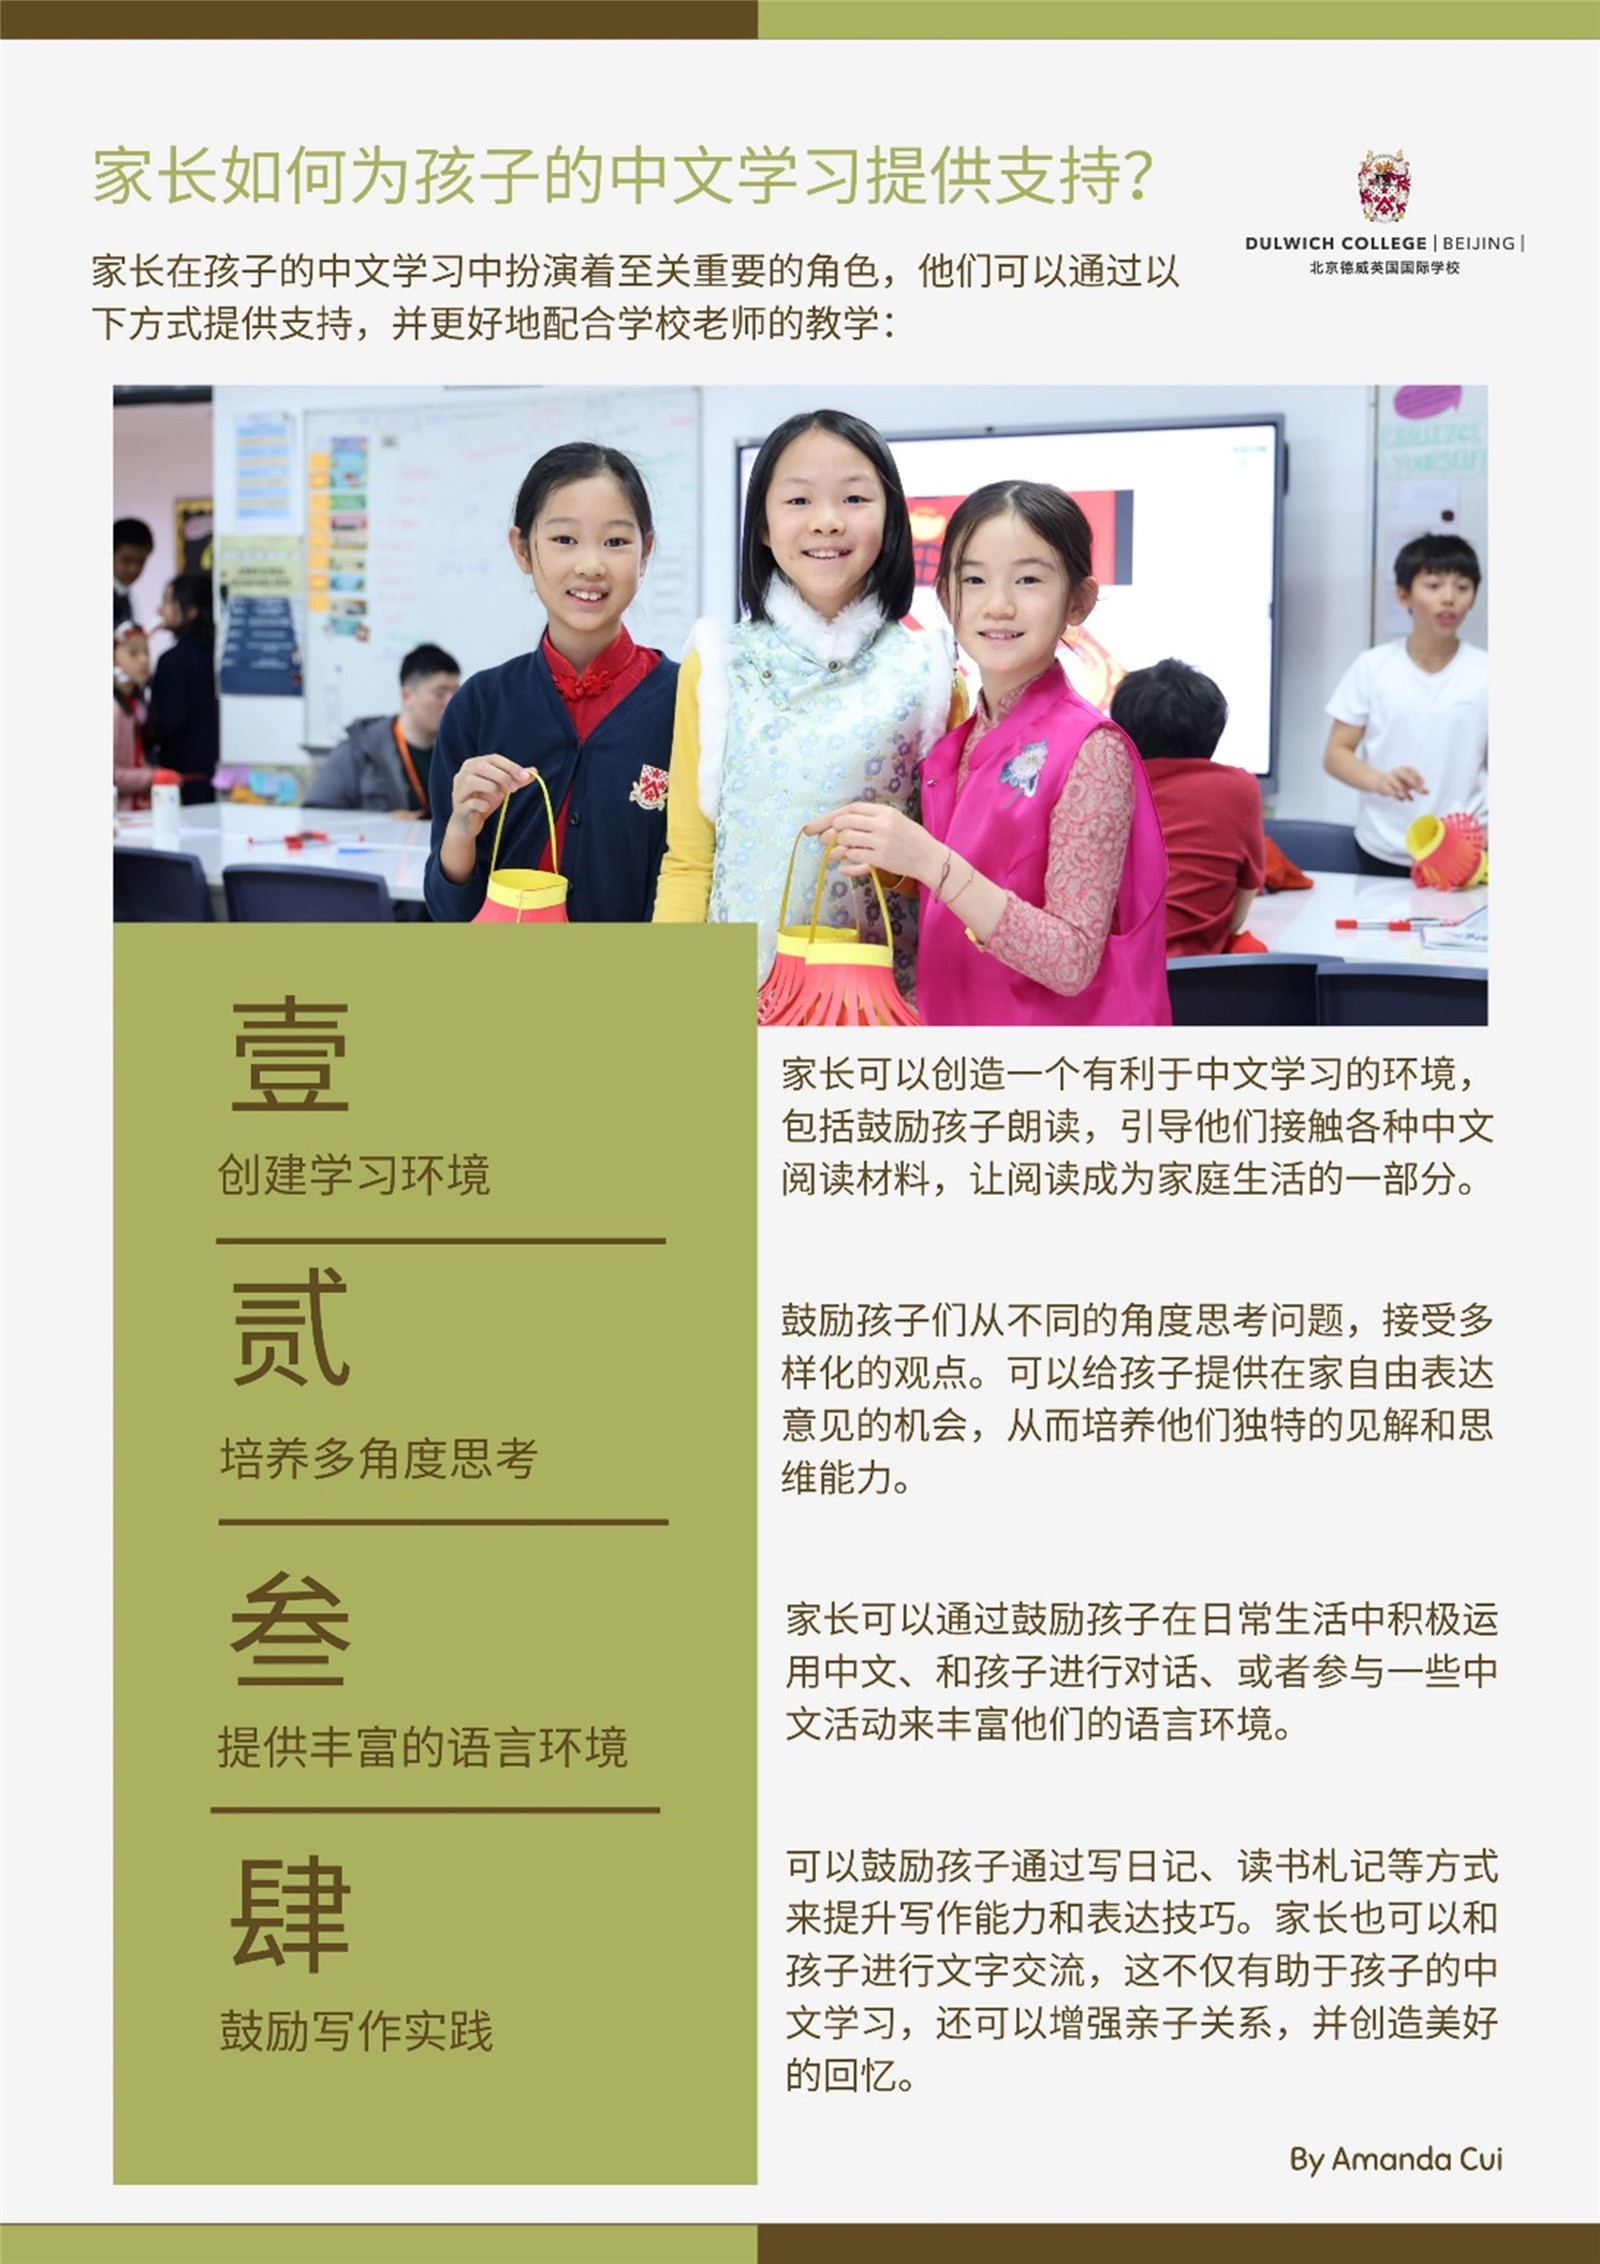 家长如何为孩子的中文学习提供支持